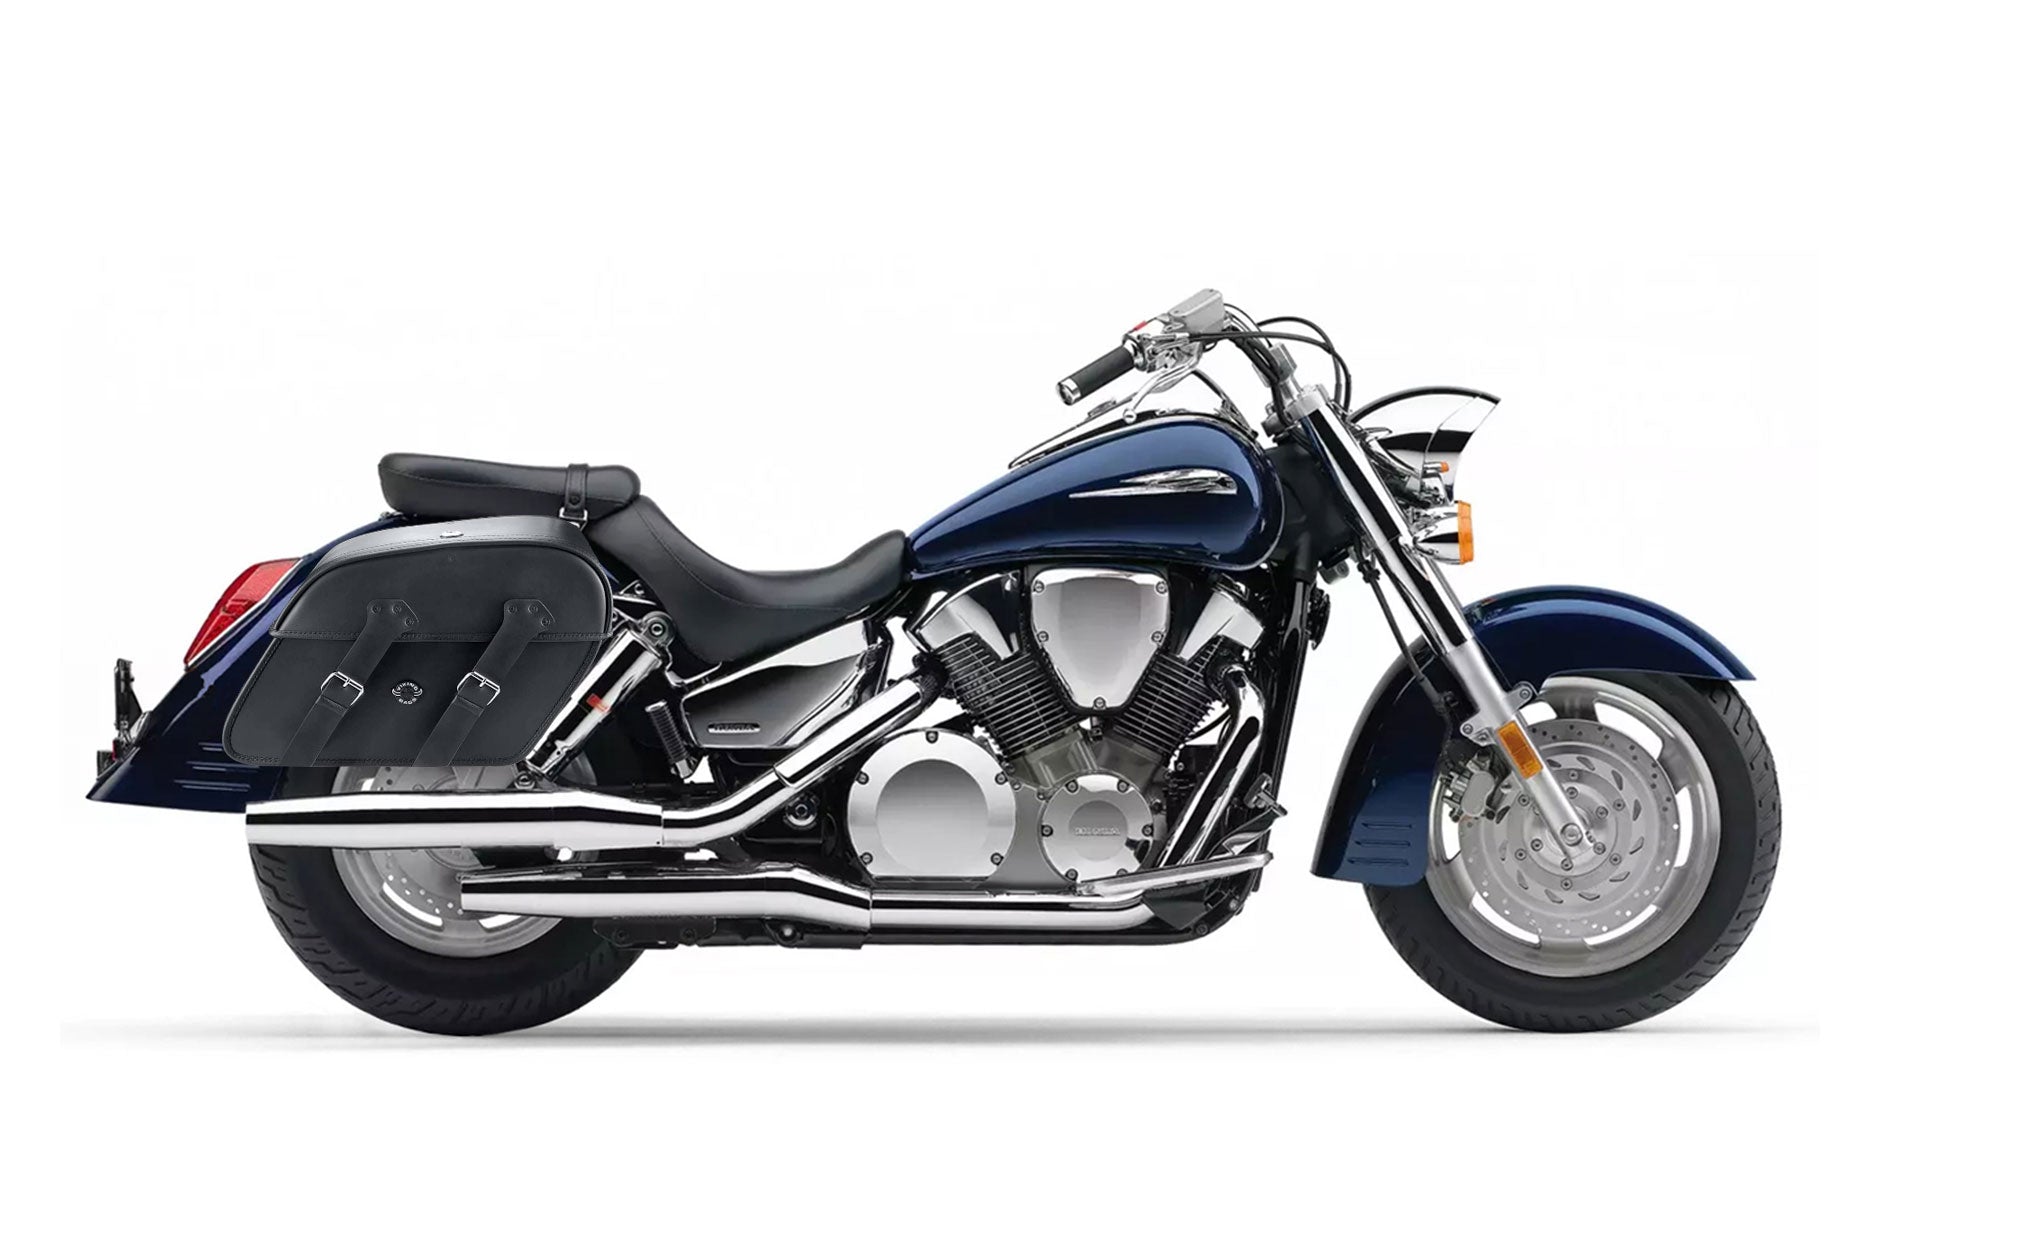 Viking Raven Extra Large Honda Vtx 1300 R Retro Leather Motorcycle Saddlebags on Bike Photo @expand